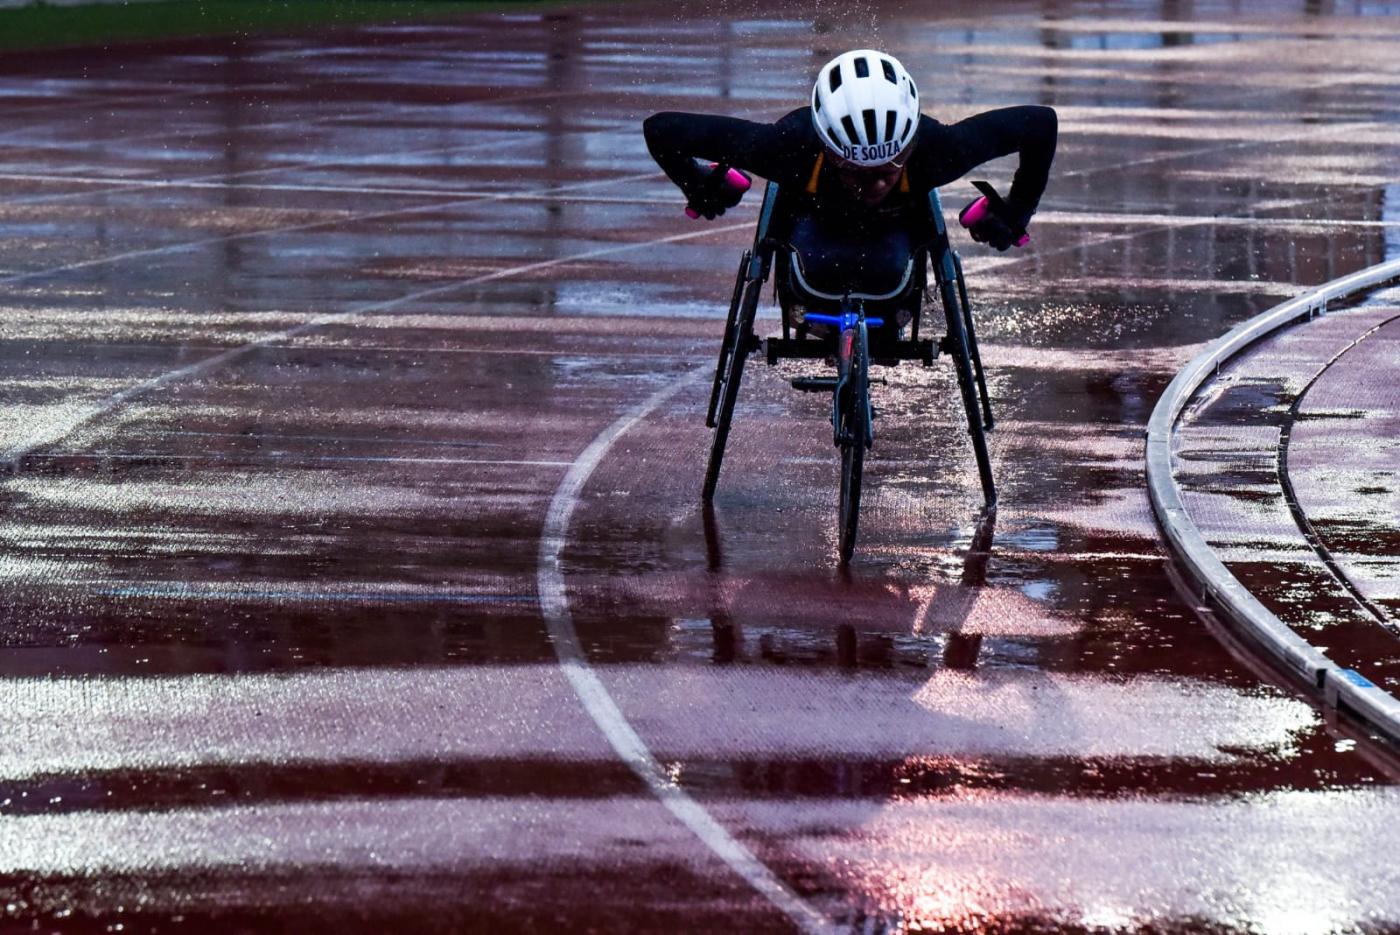 atleta na cadeira de rodas correndo um pista de atletismo molhada #paratodosverem